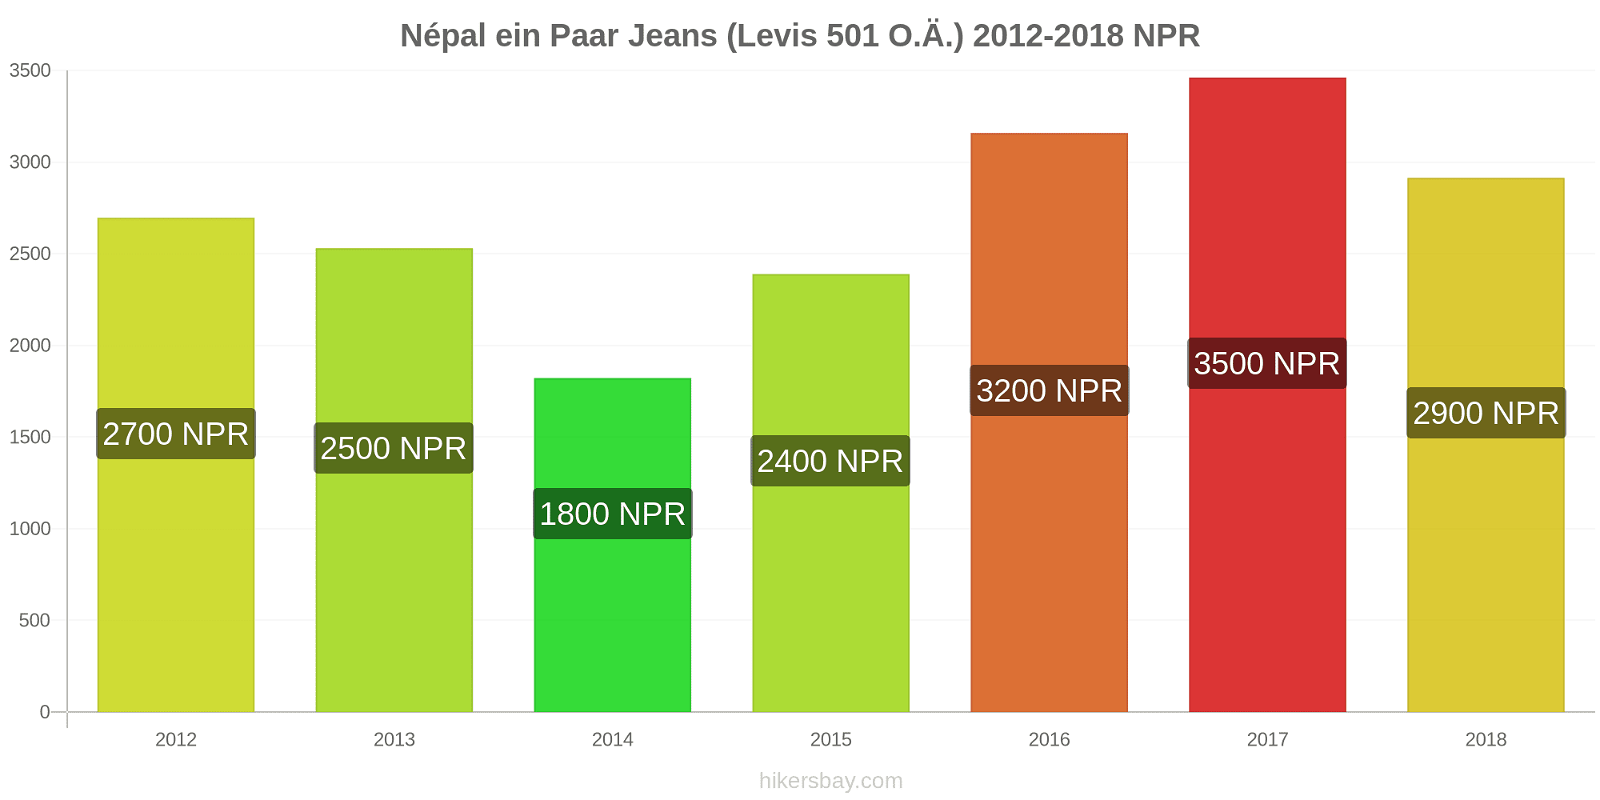 Népal Preisänderungen 1 Paar Jeans (Levis 501 oder ähnliche) hikersbay.com